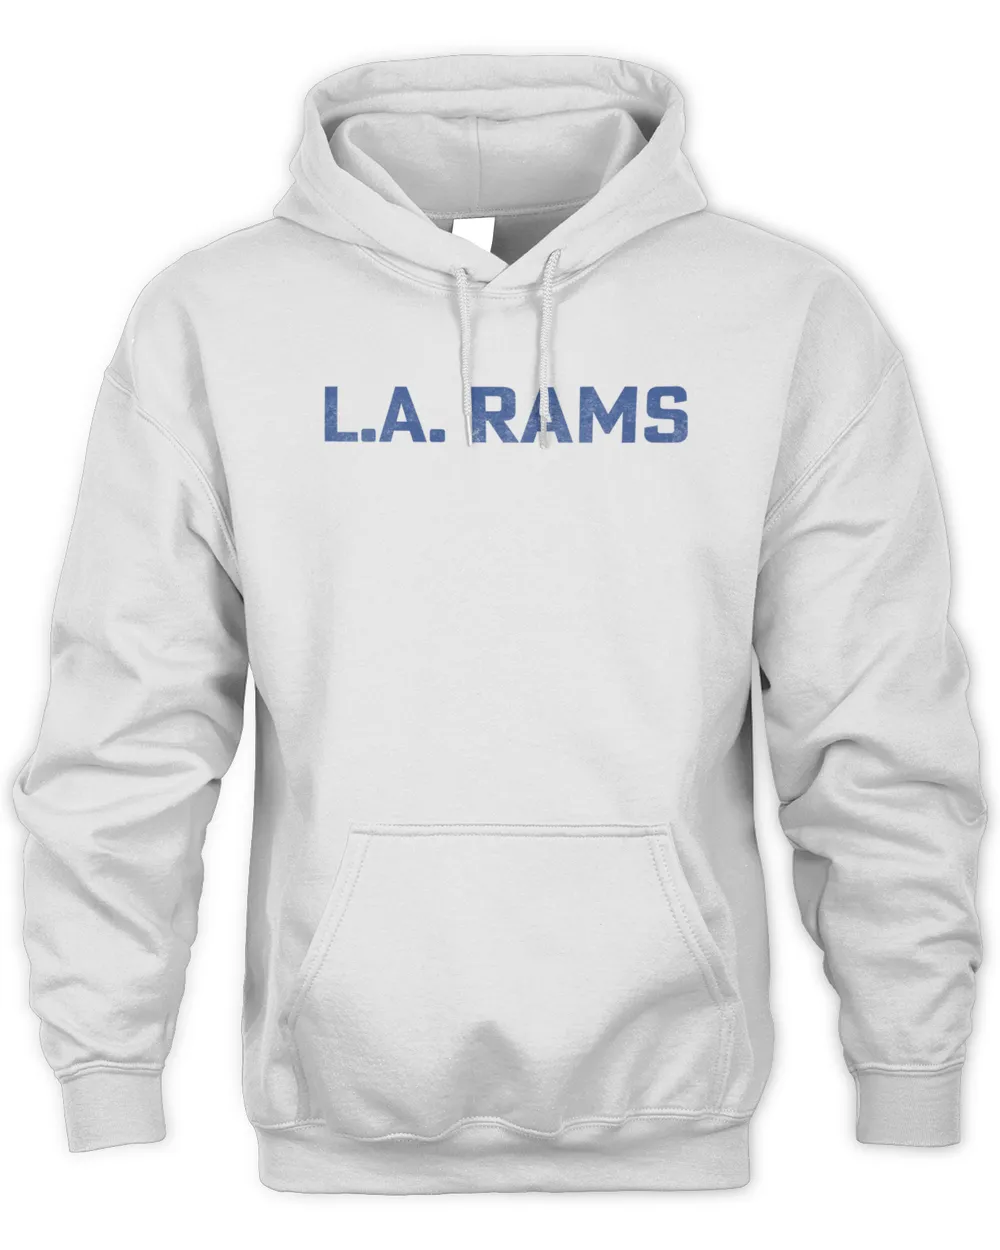 Nfl Los Angeles Rams LA Rams x GALLERY DEPT Hoodie